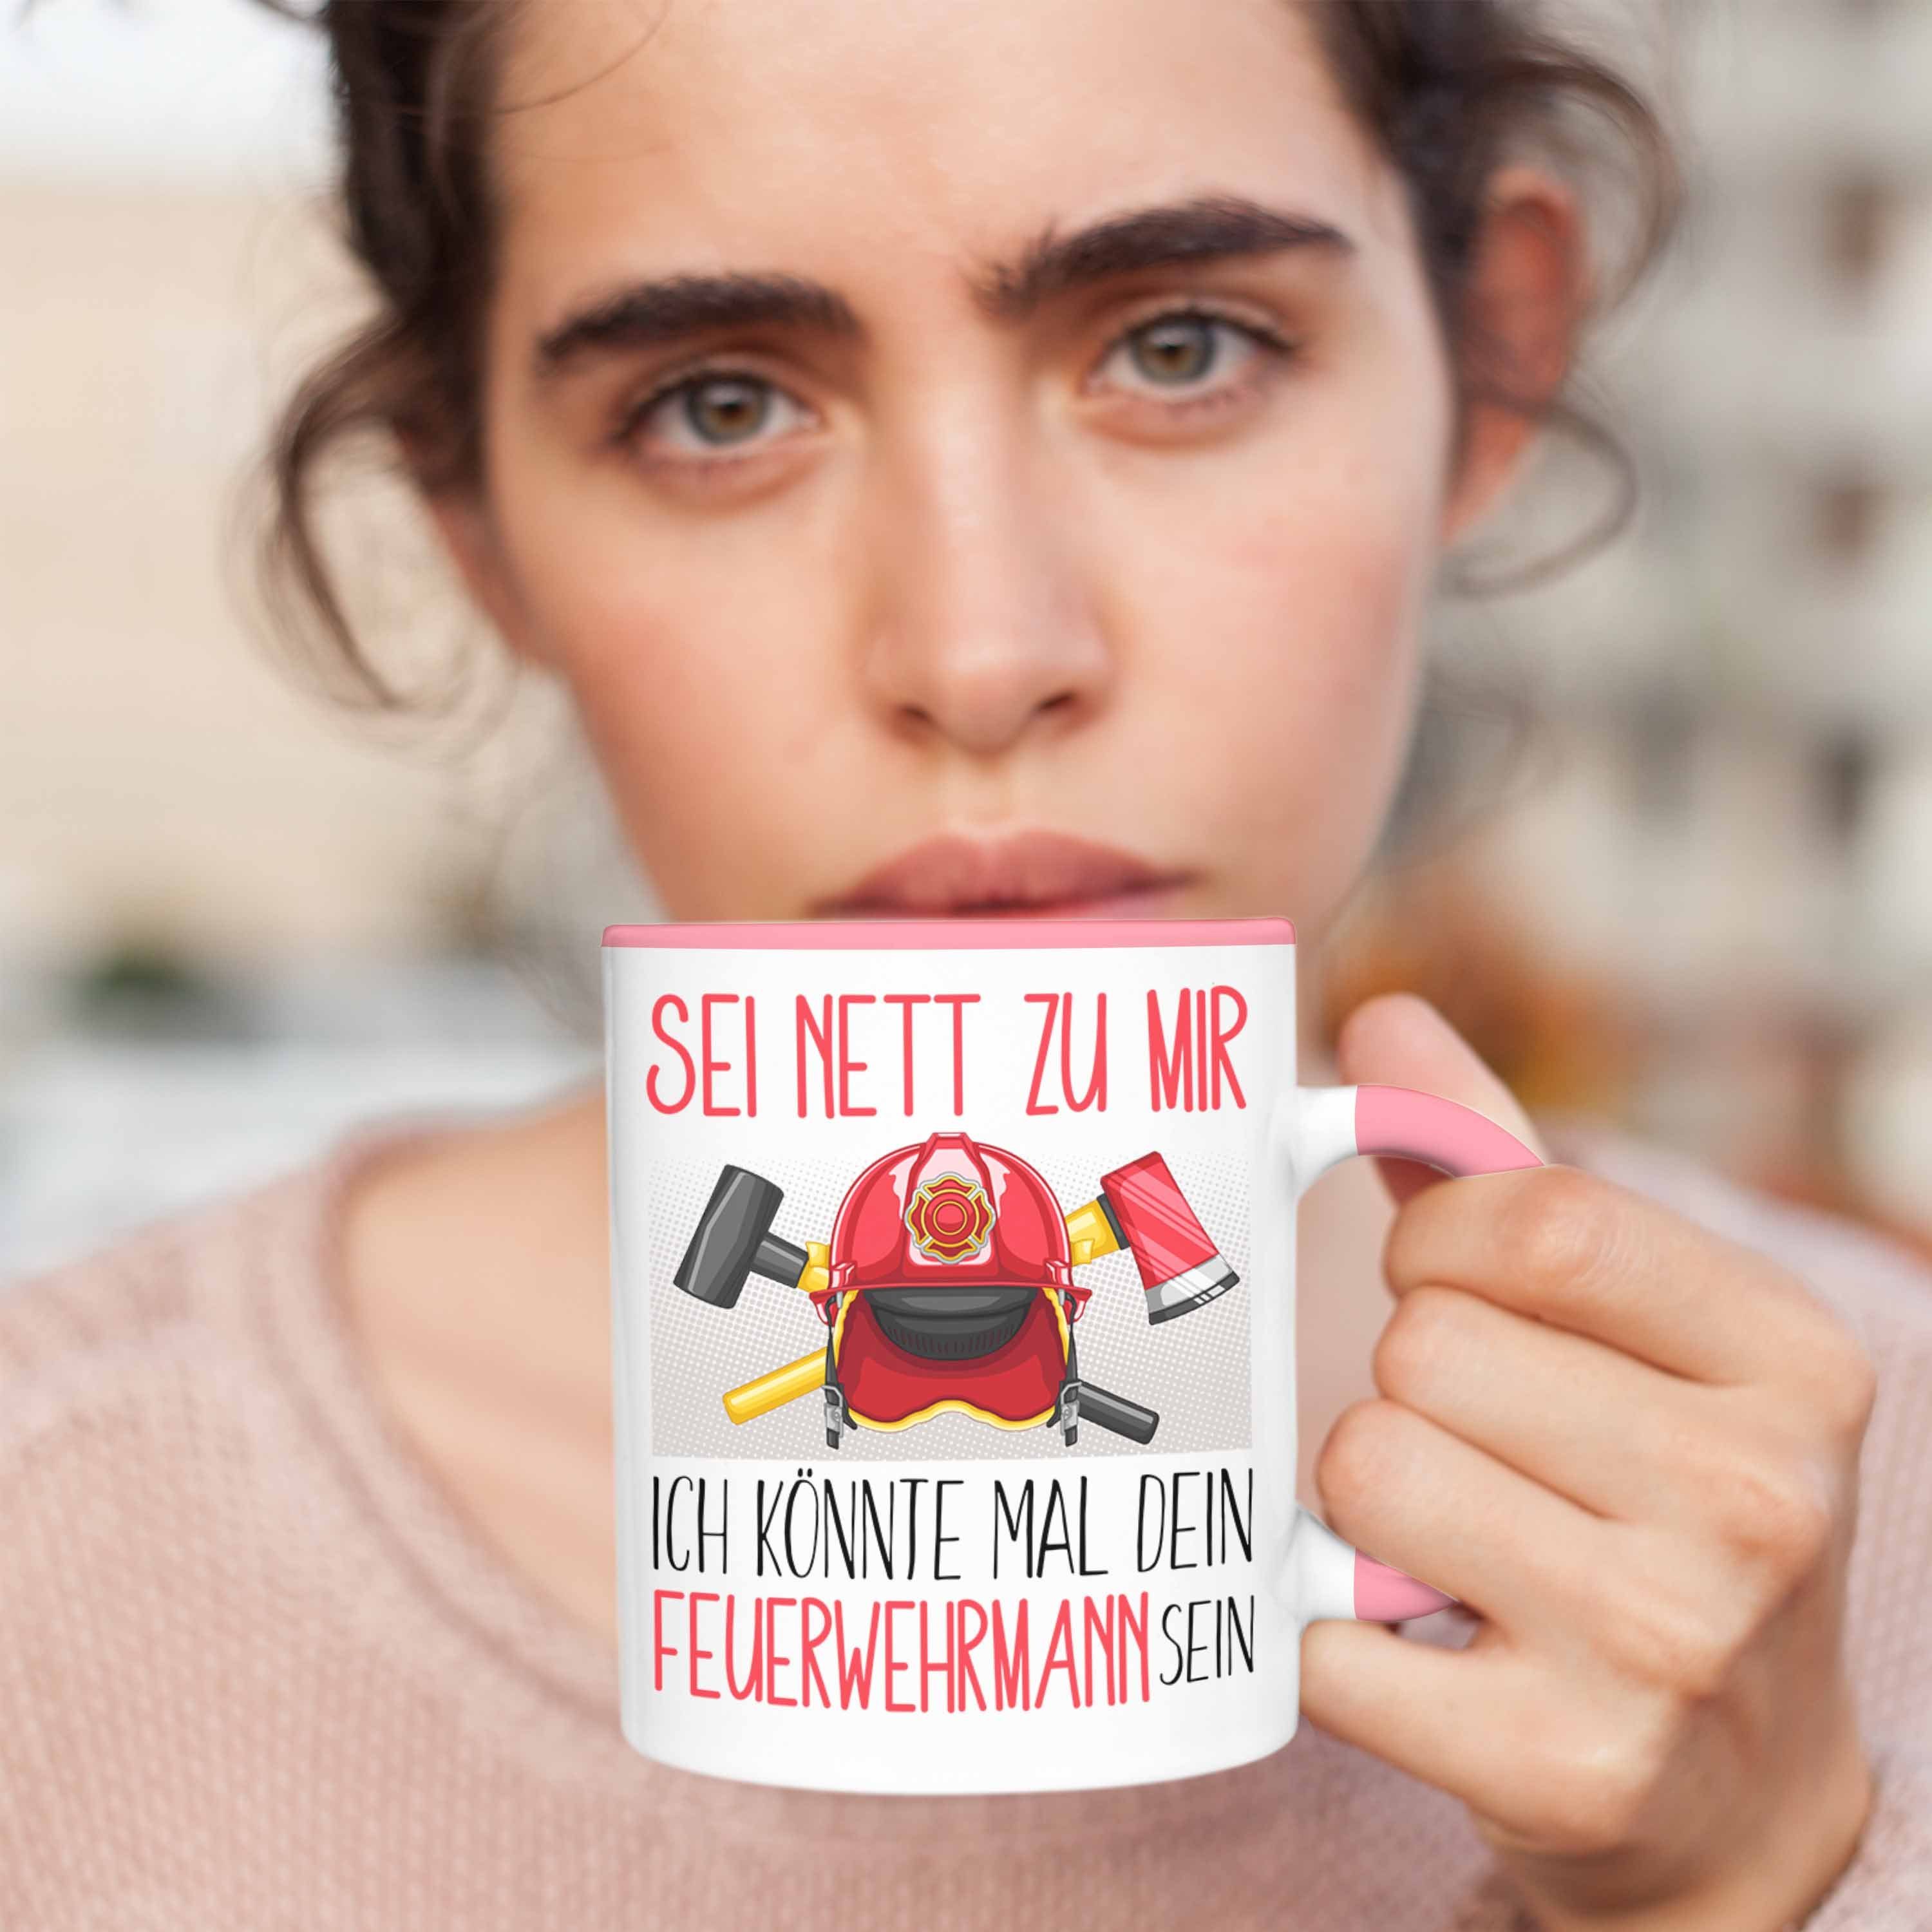 Tasse Sei Geschenkidee Rosa Tasse Feuerwehr Trendation Geschenk Net Ausbildung Feuerwehrmann